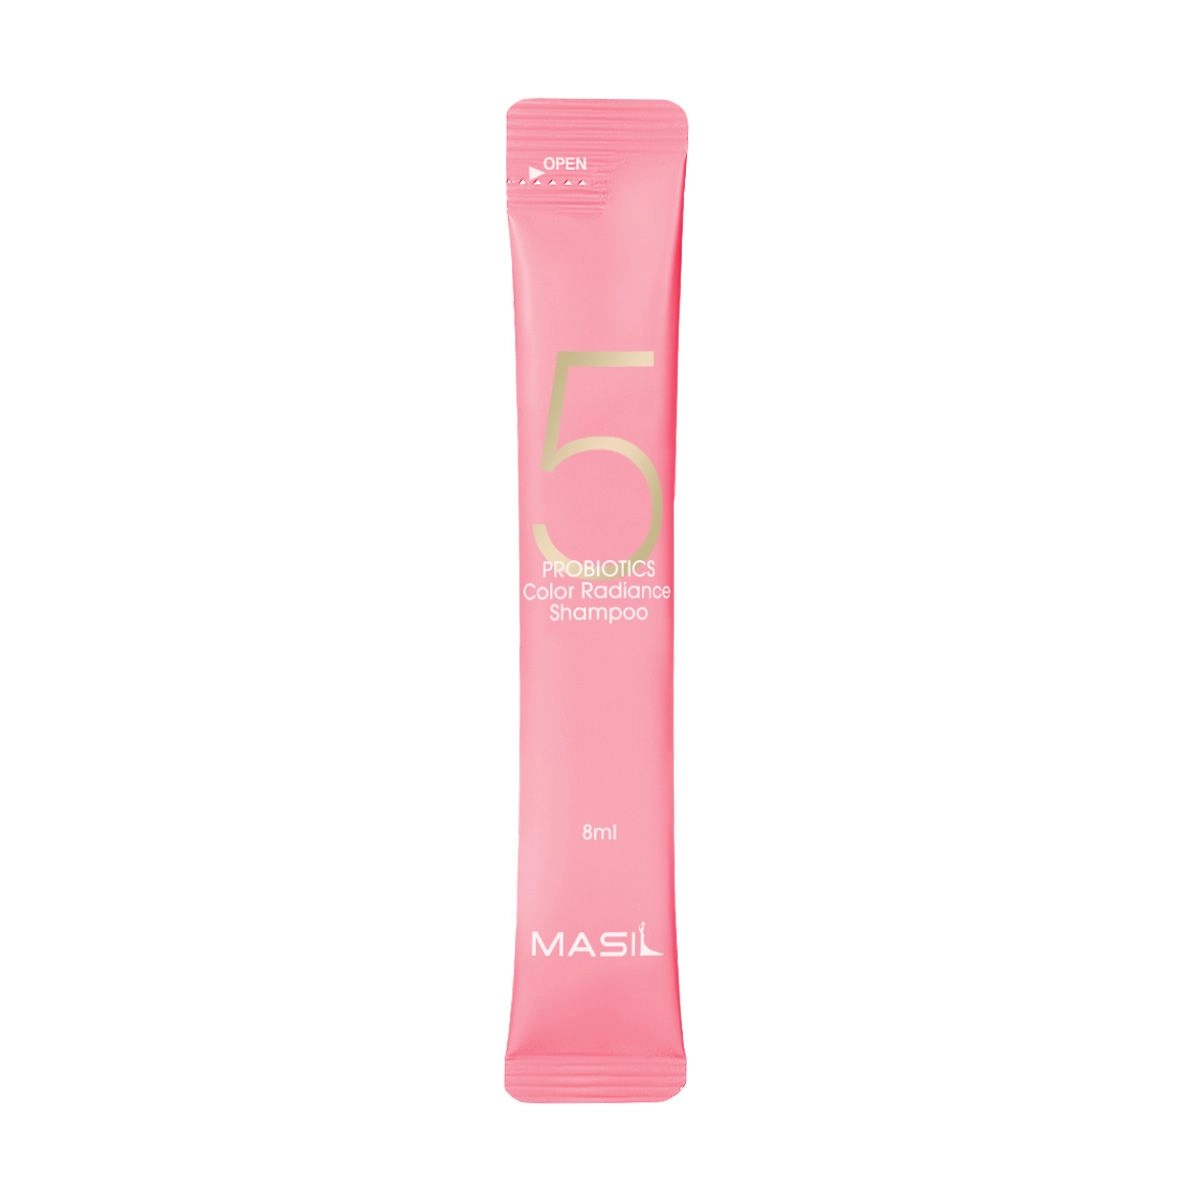 Шампунь для защиты цвета окрашенных волос с пробиотиками - Masil 5 Probiotics Color Radiance Shampoo, 8 мл - фото N3